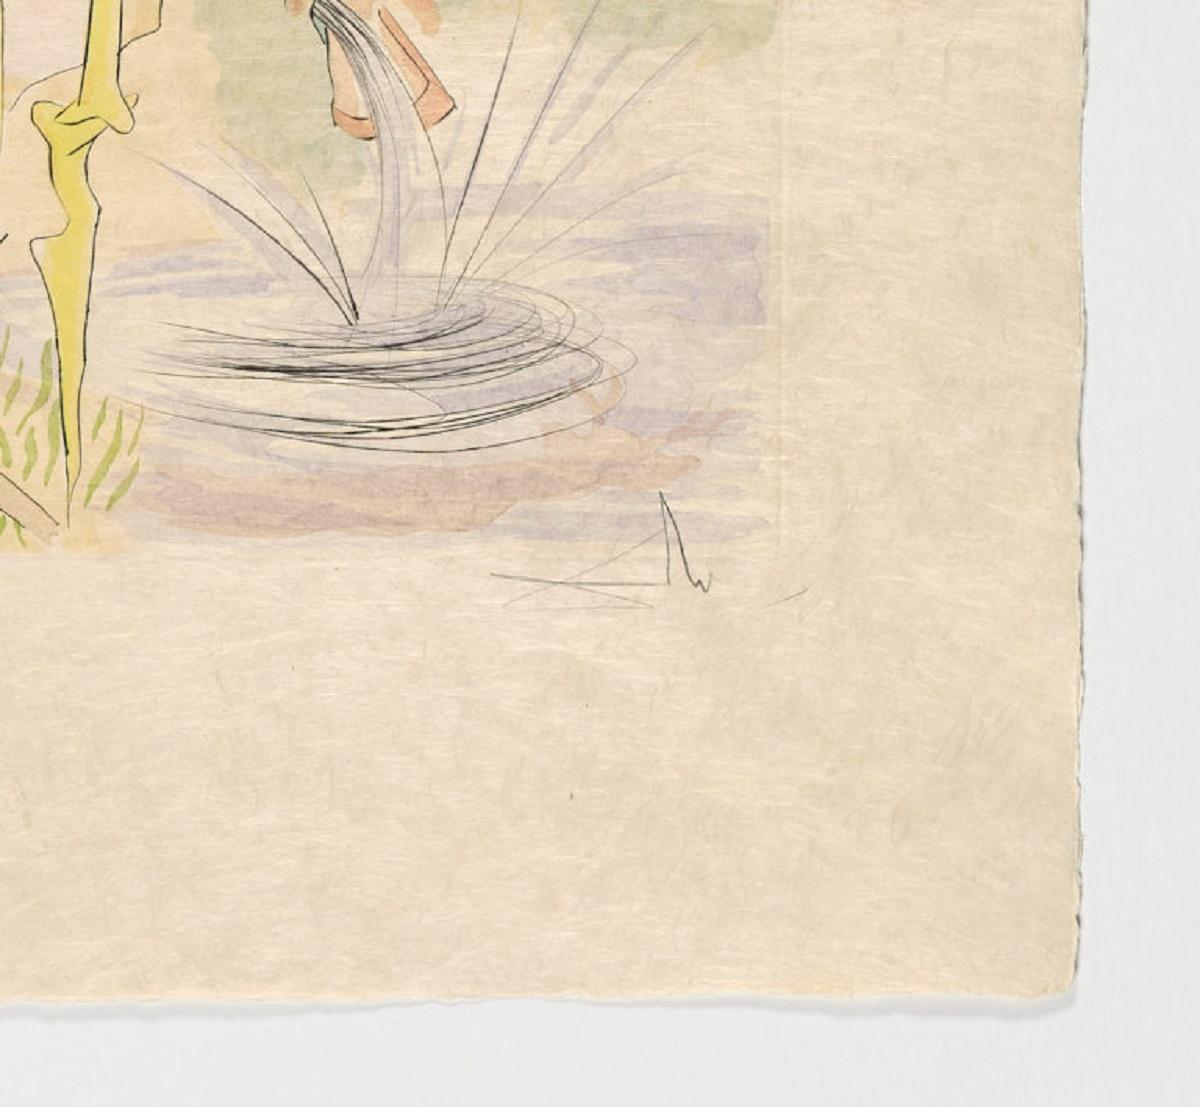 Salvador Dali (Spain, 1904-1989)
'La Cerf se voyant dans l’eau', 1974
Serie: Le Bestiaire de La Fontaine
dry point, aquatint on japanese paper
30.6 x 22.7 in. (77.5 x 57.5 cm.)
Edition of 250
Unframed
ID: DAL2001-012
Hand-signed by author
It appears